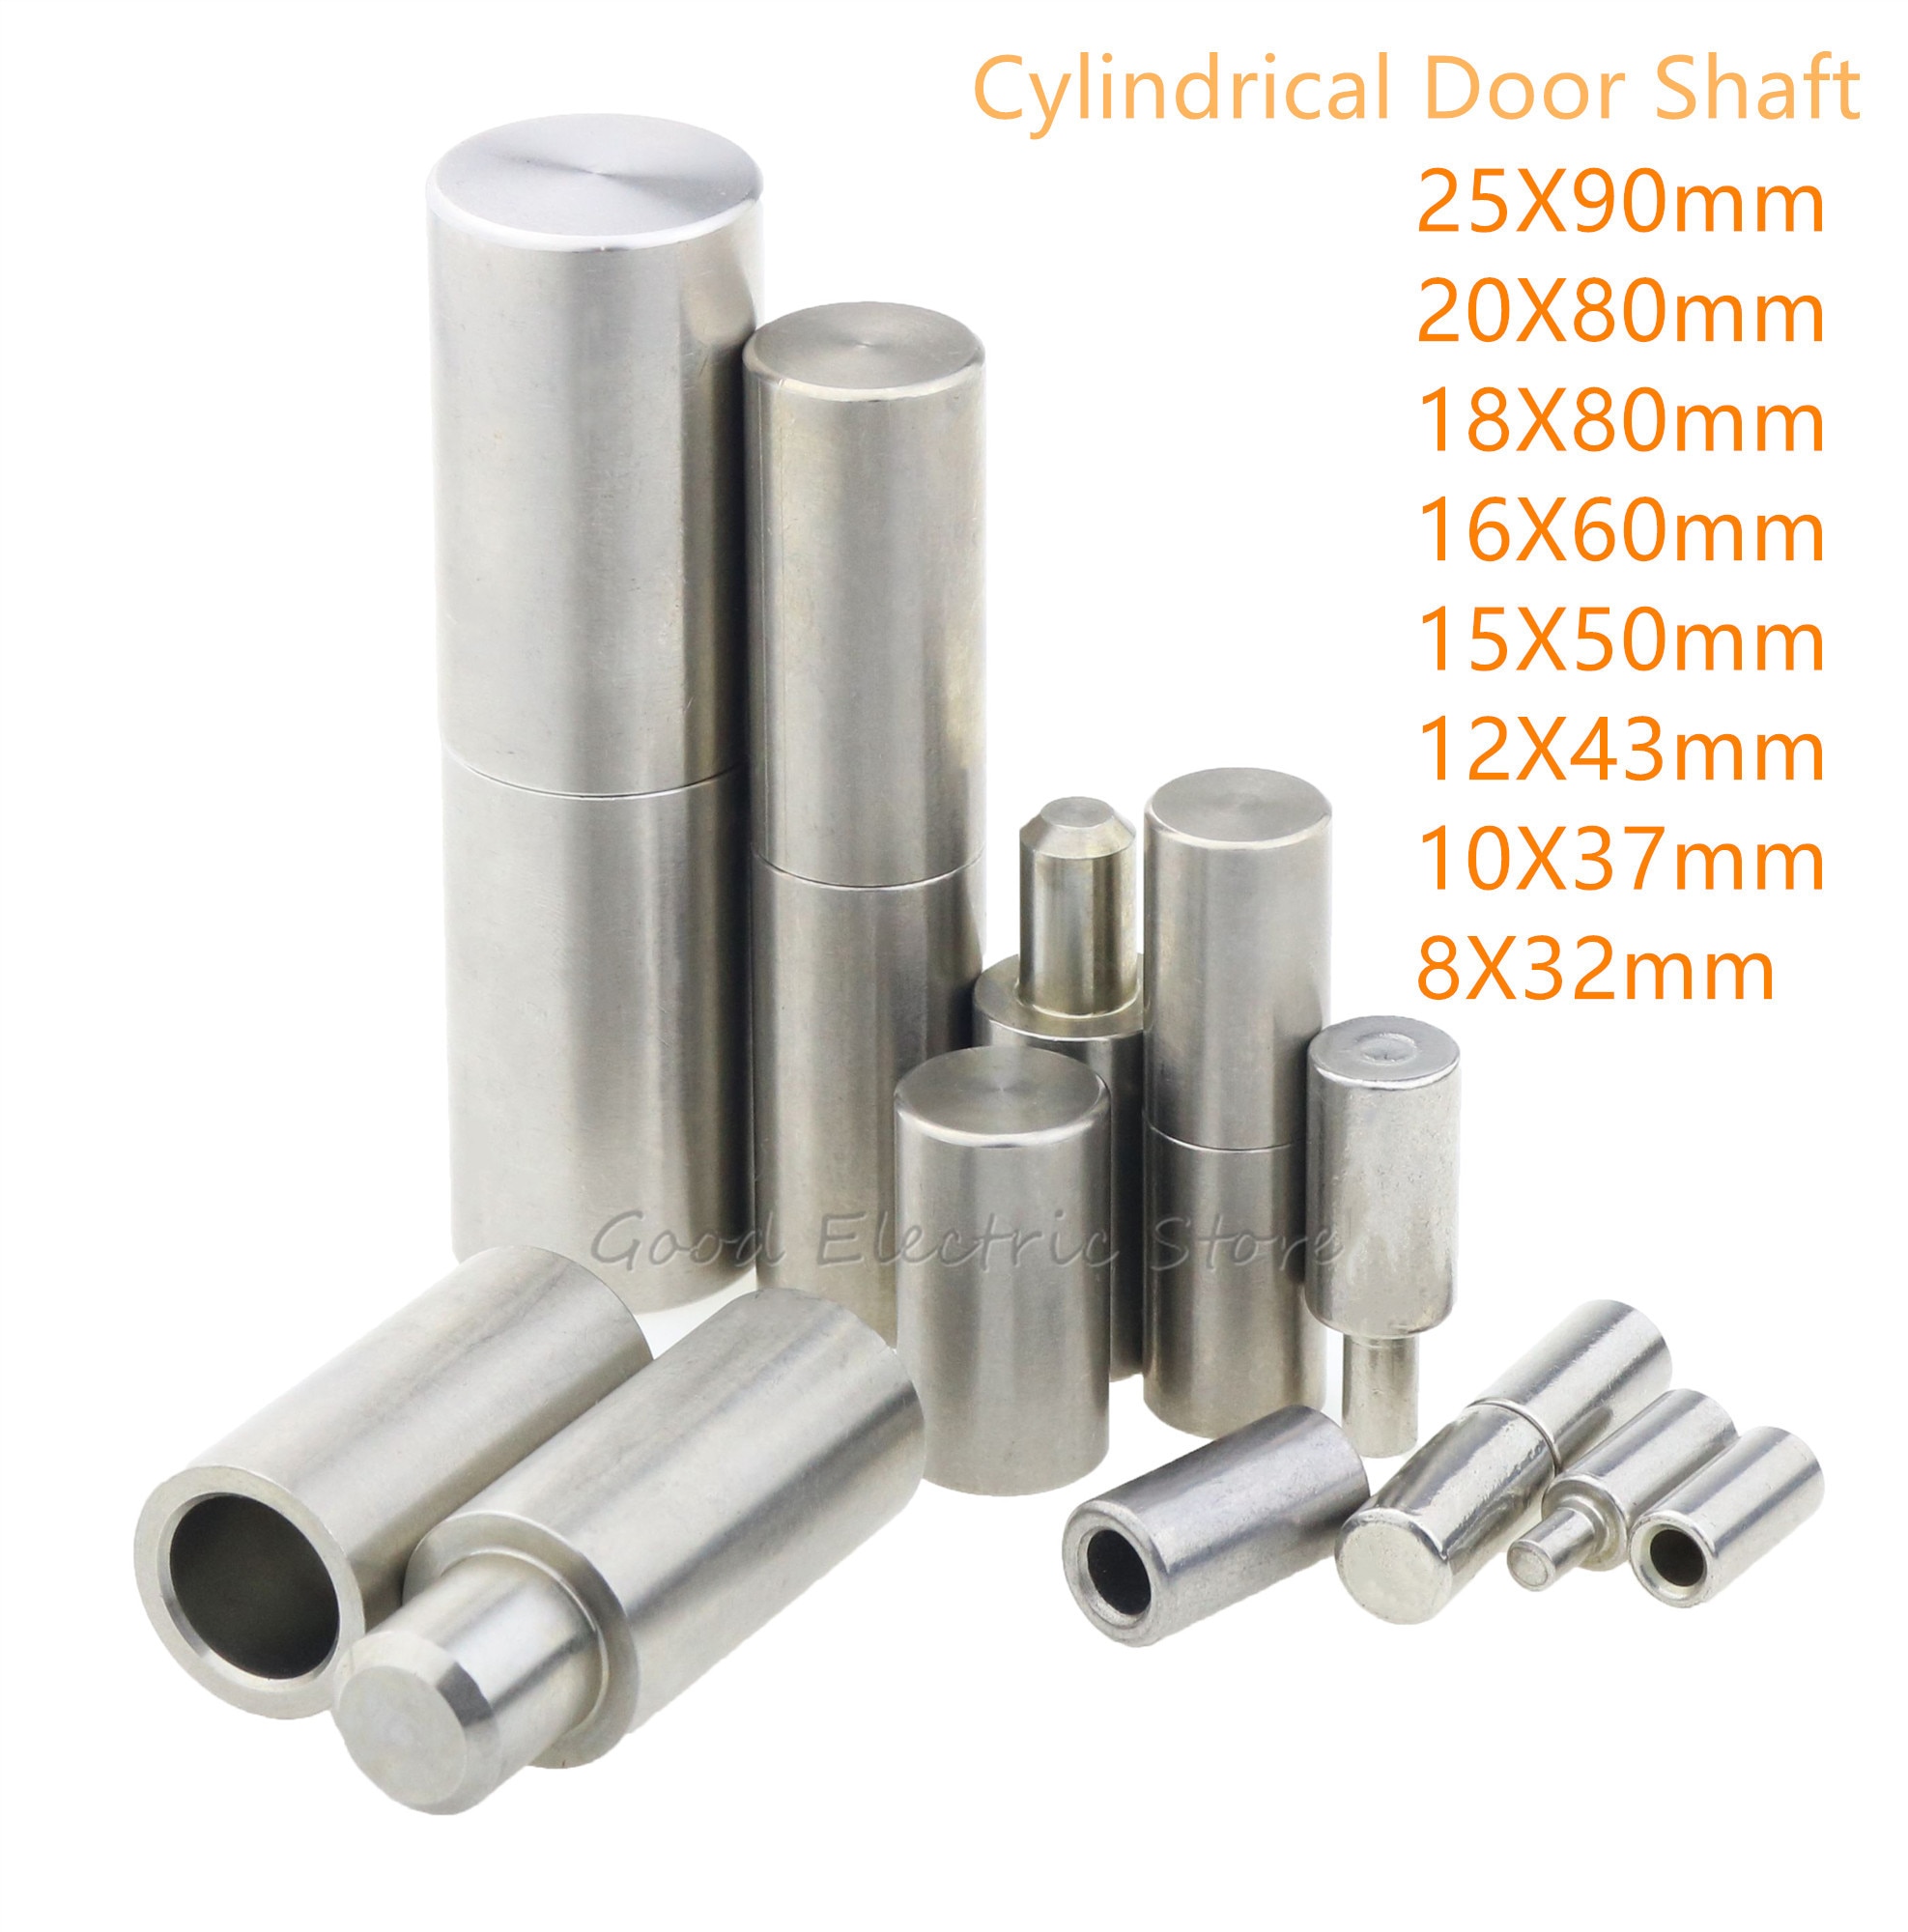 201 døraksel i rustfrit stål, svejste hængslede cylindriske døraksler 25 x 90mm 20 x 80mm 10 x 37mm 8 x 32mm fjernelse af dørakselhængsler